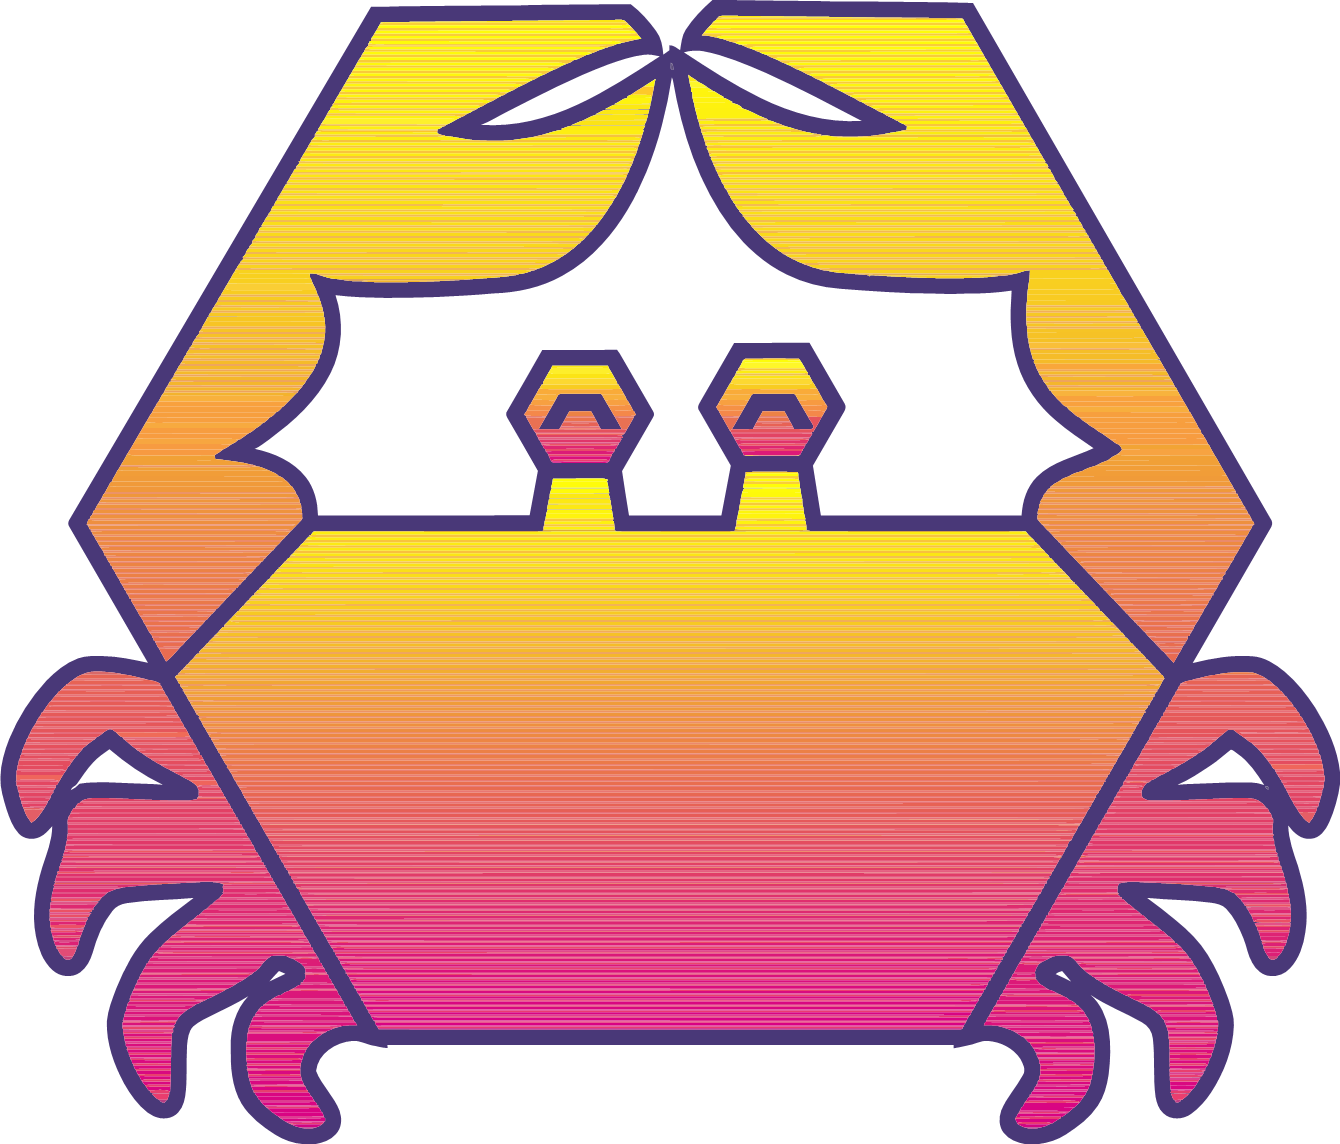 hex-crab-chapo